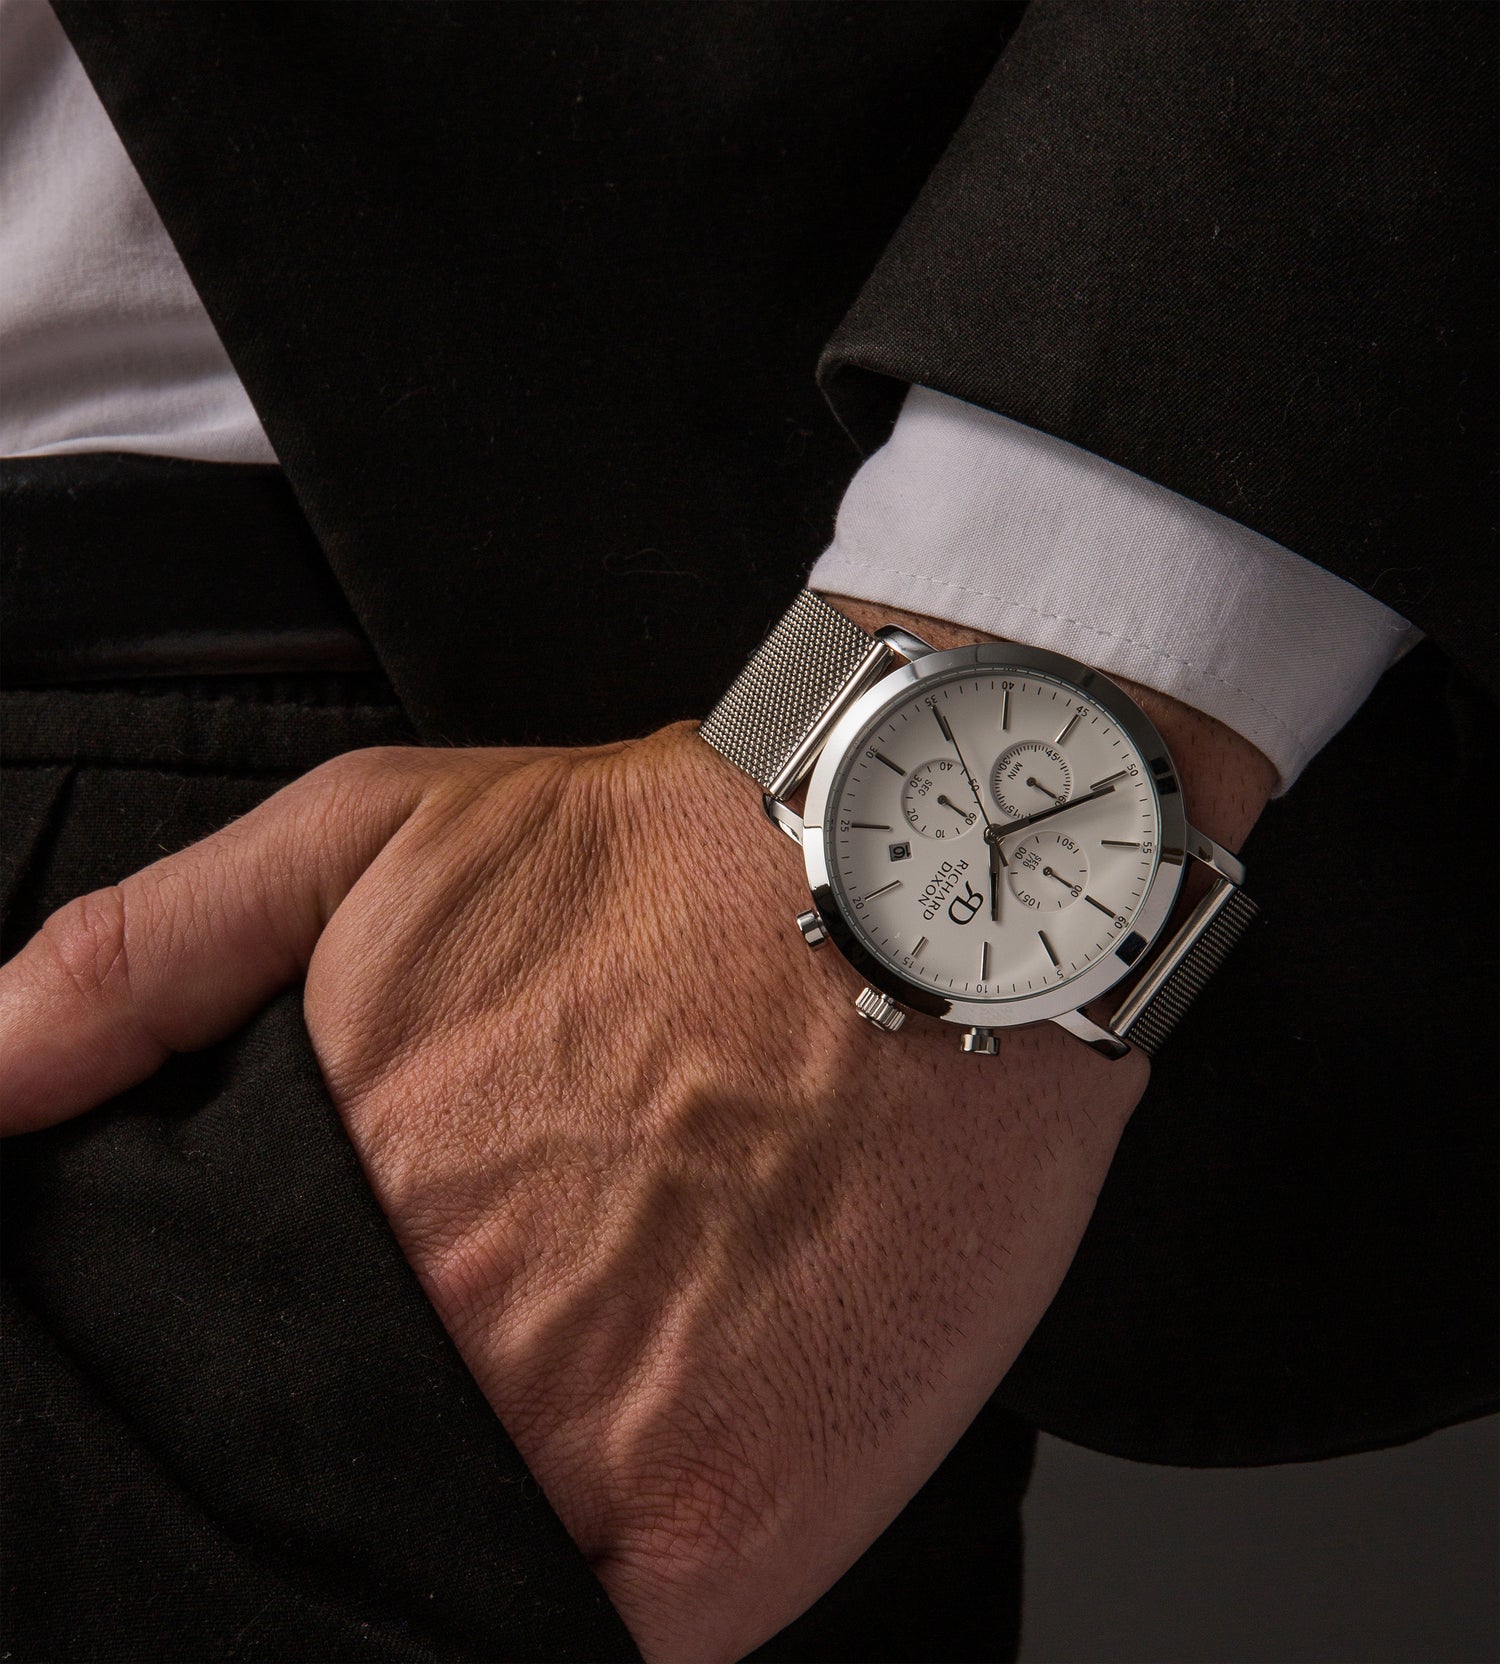 Relógio de homem Richard Dixon Iconic Chrono Mesh Silver White no pulso de um homem vestido de fato.